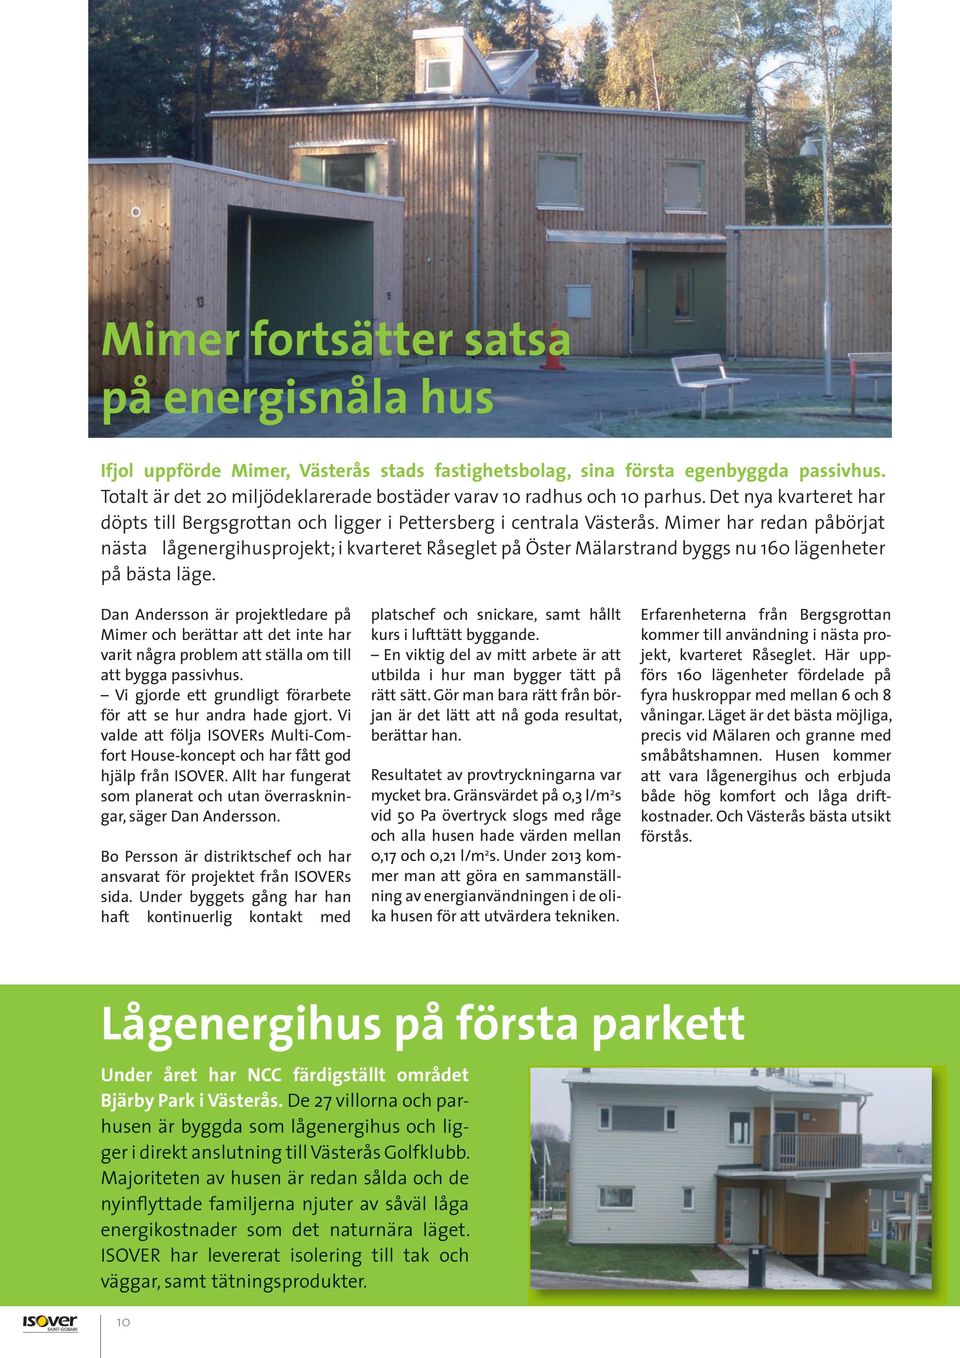 Mimer har redan påbörjat nästa lågenergihusprojekt; i kvarteret Råseglet på Öster Mälarstrand byggs nu 160 lägenheter på bästa läge.